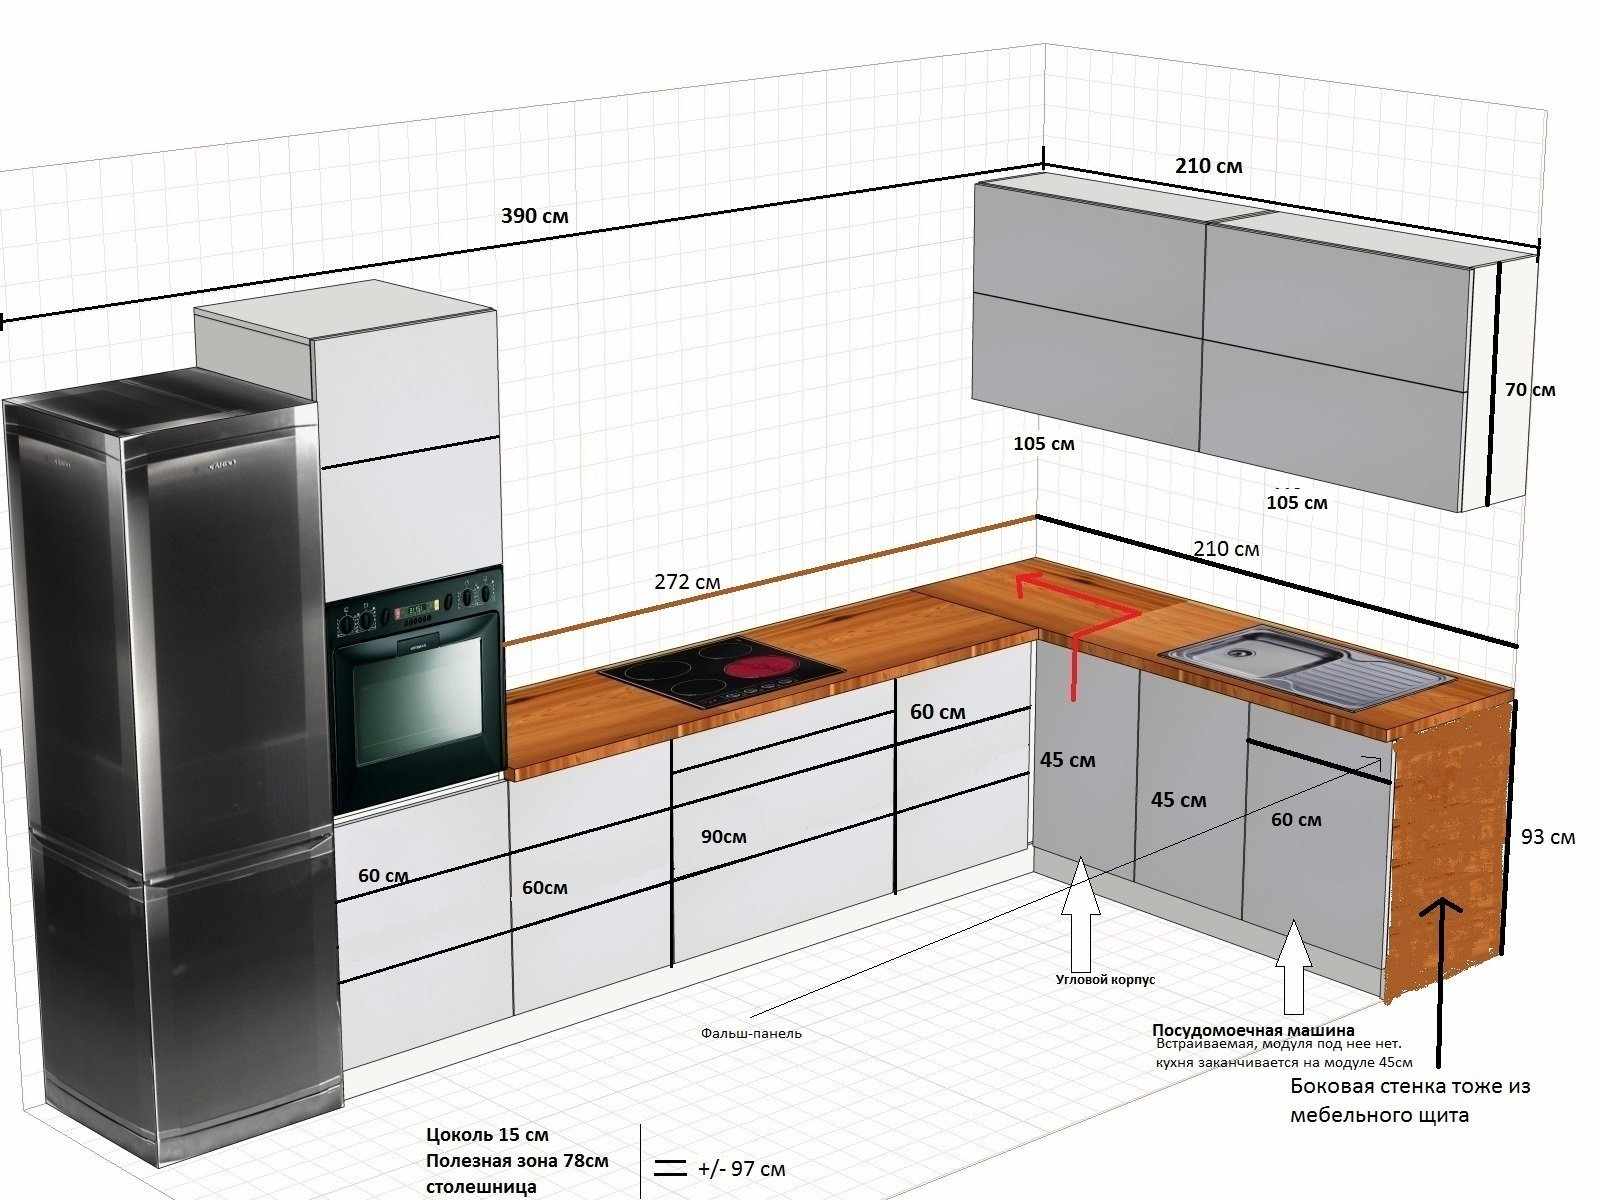 Схема расстановки техники на кухне